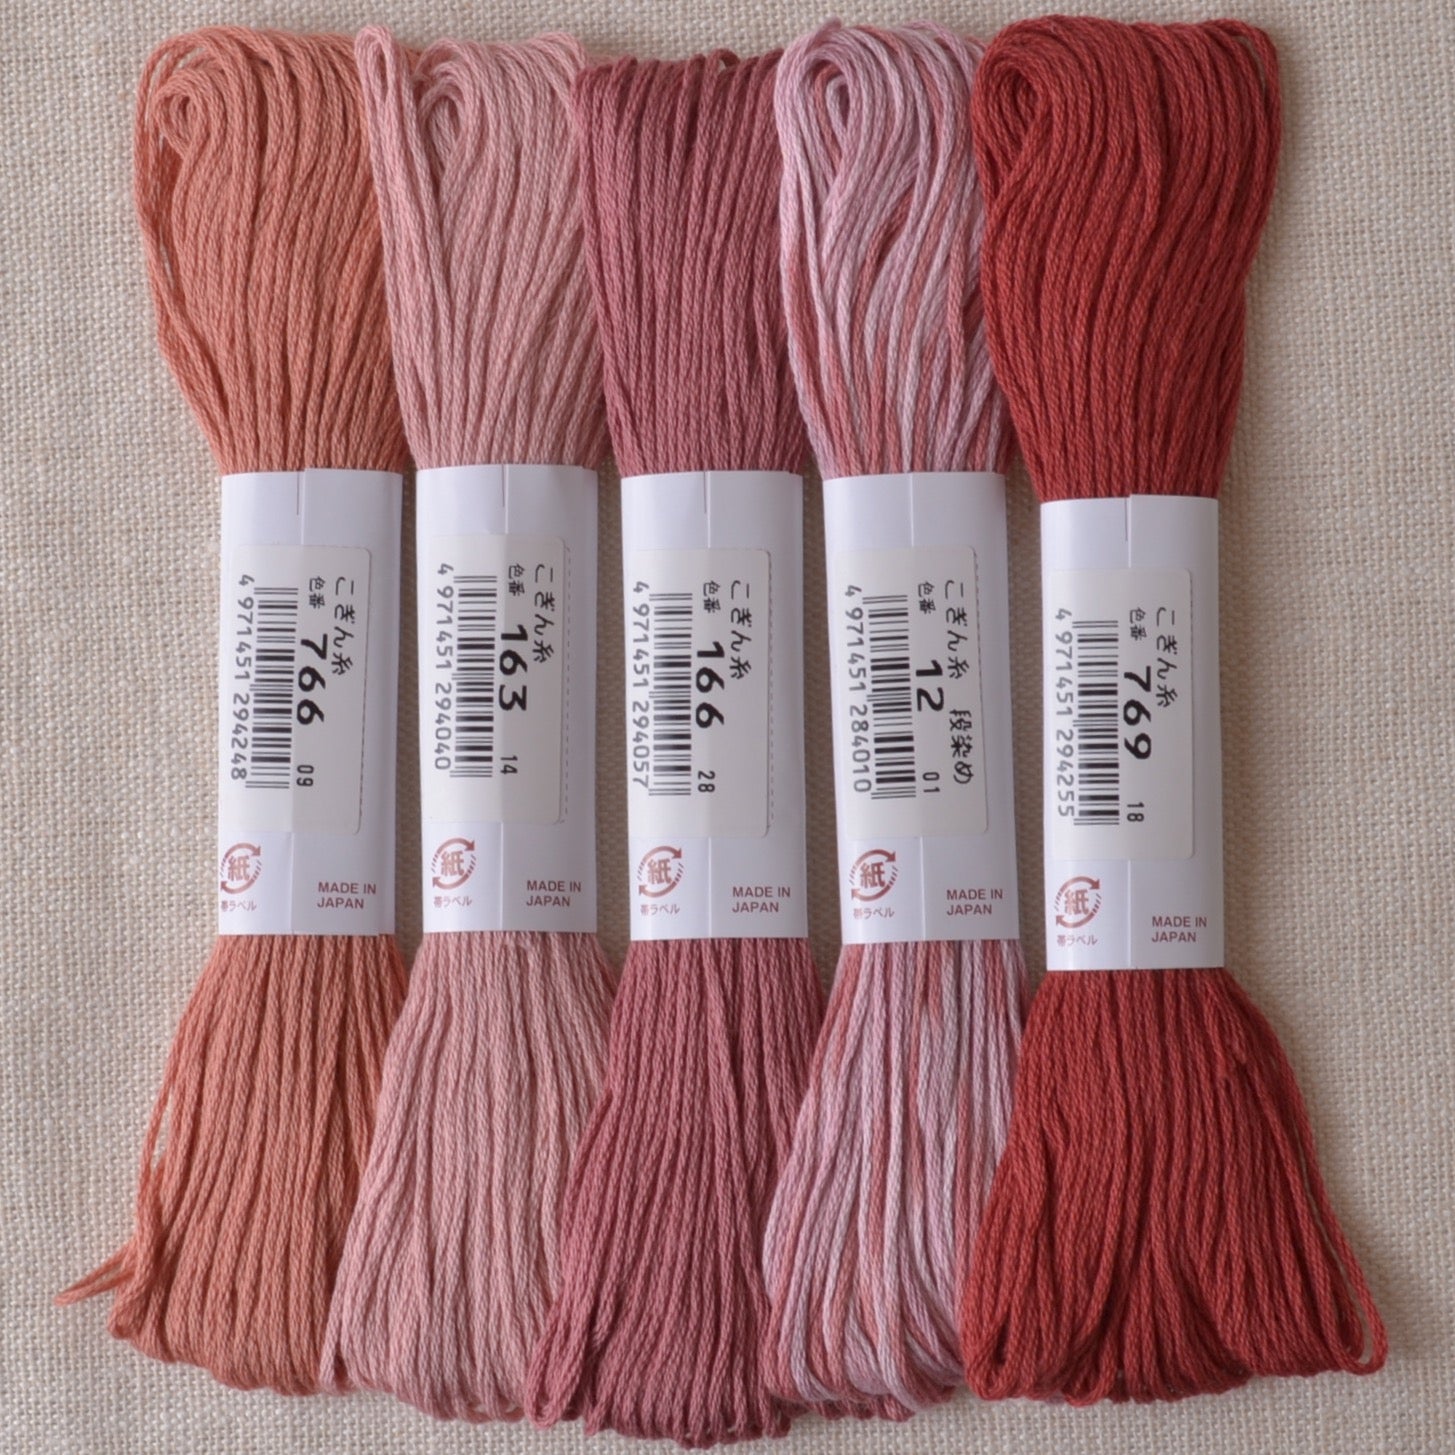 Olympus Kogin Threads, rose pinks